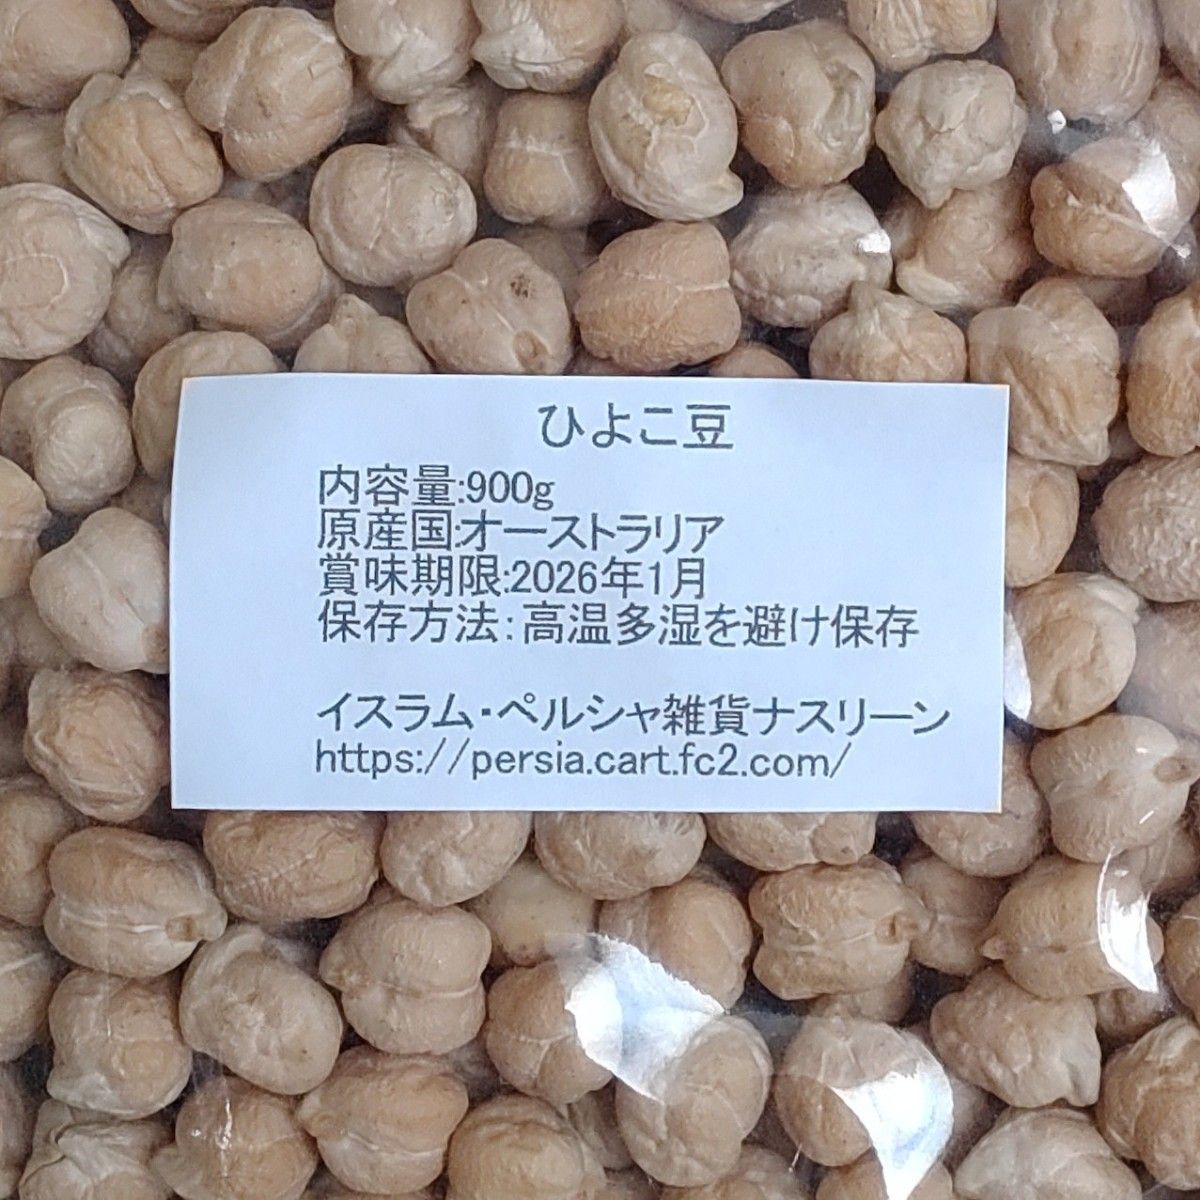 ②ホワイトチャナ(ひよこ豆) 900g＆⑨グリーンムングホール(緑豆) 900g